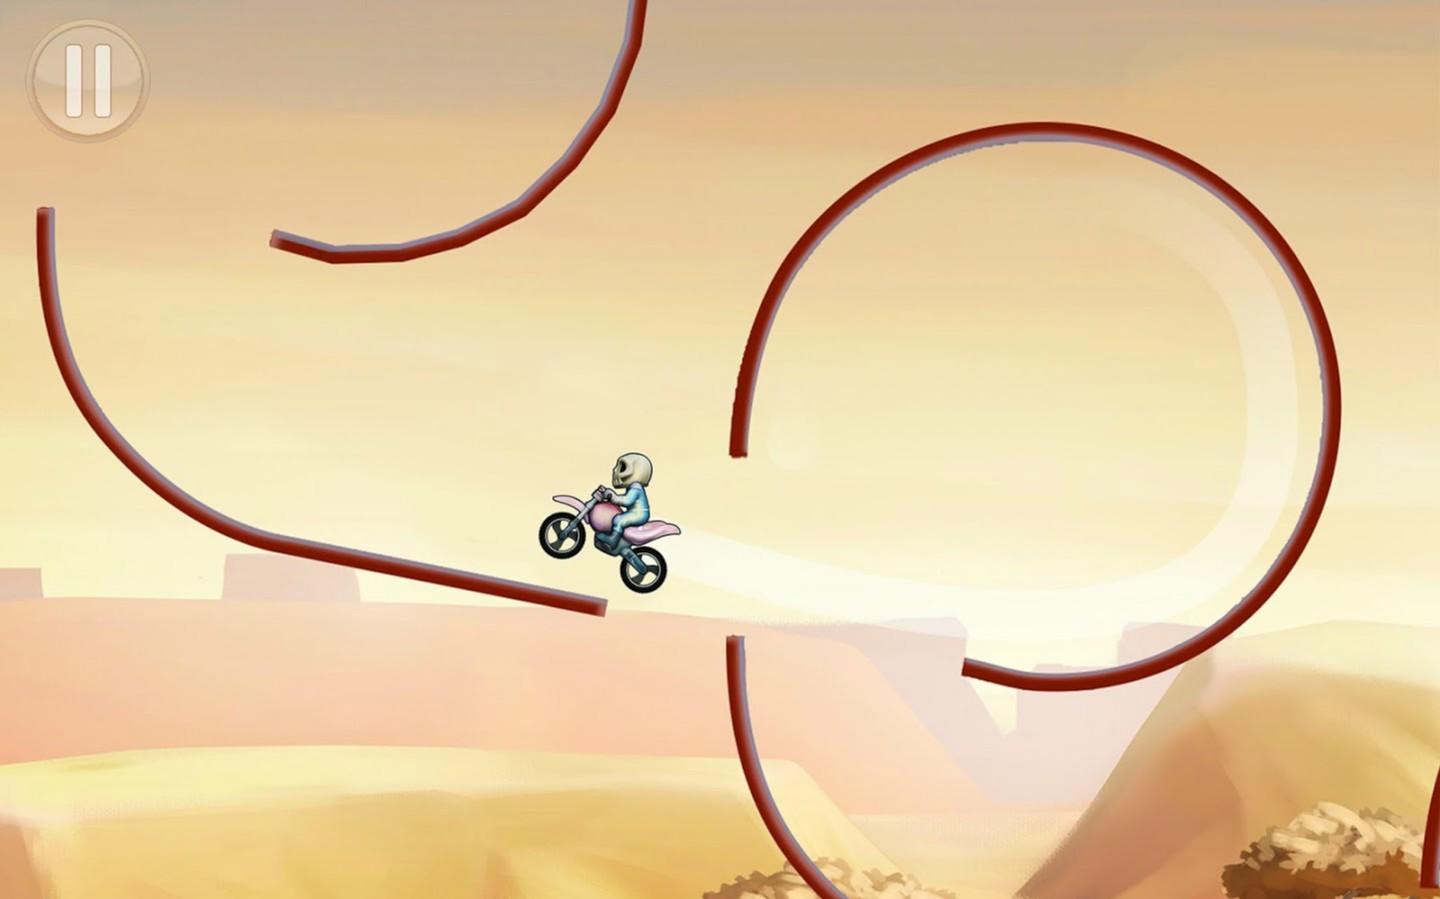 Bike Race - Motorcycle Racing Game遊戲截圖